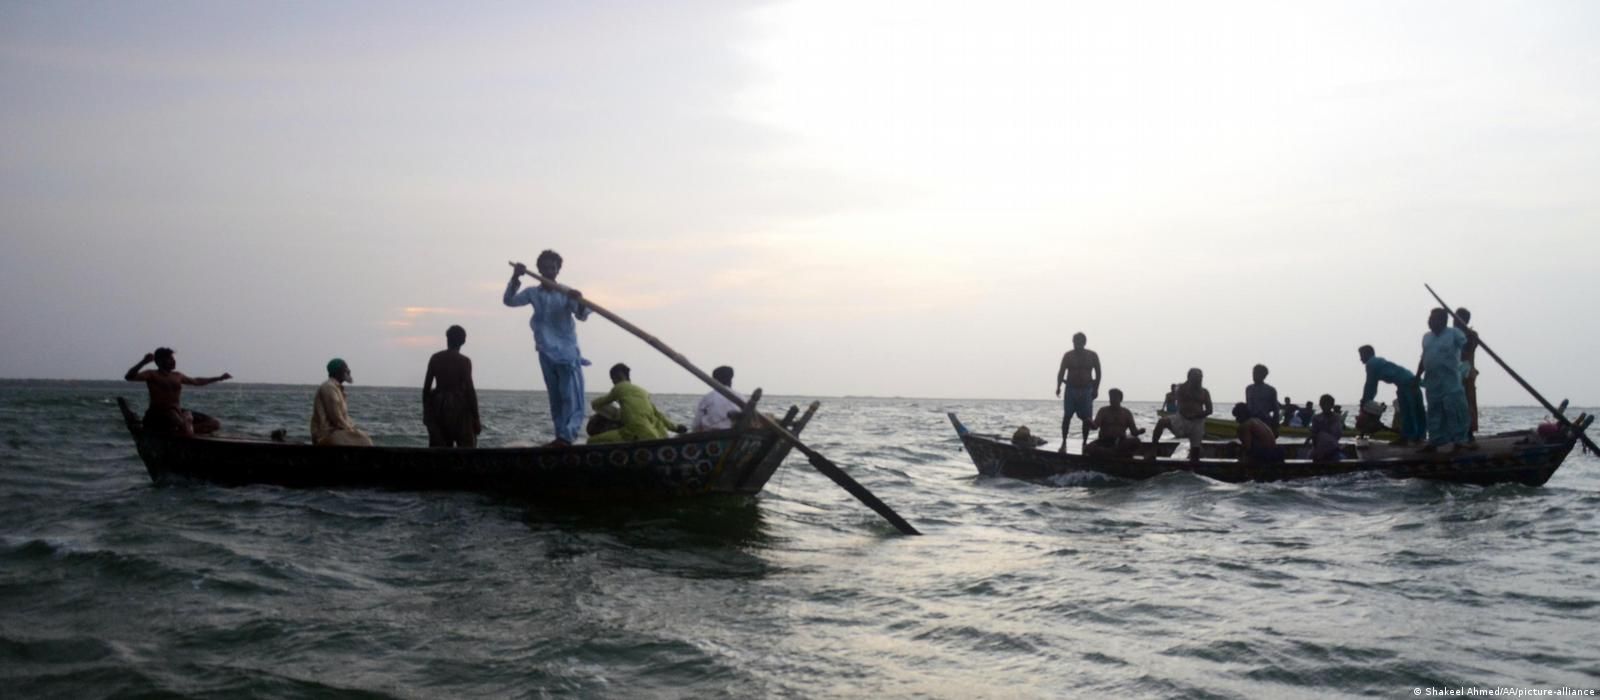  В Пакистане во время экскурсии опрокинулась лодка